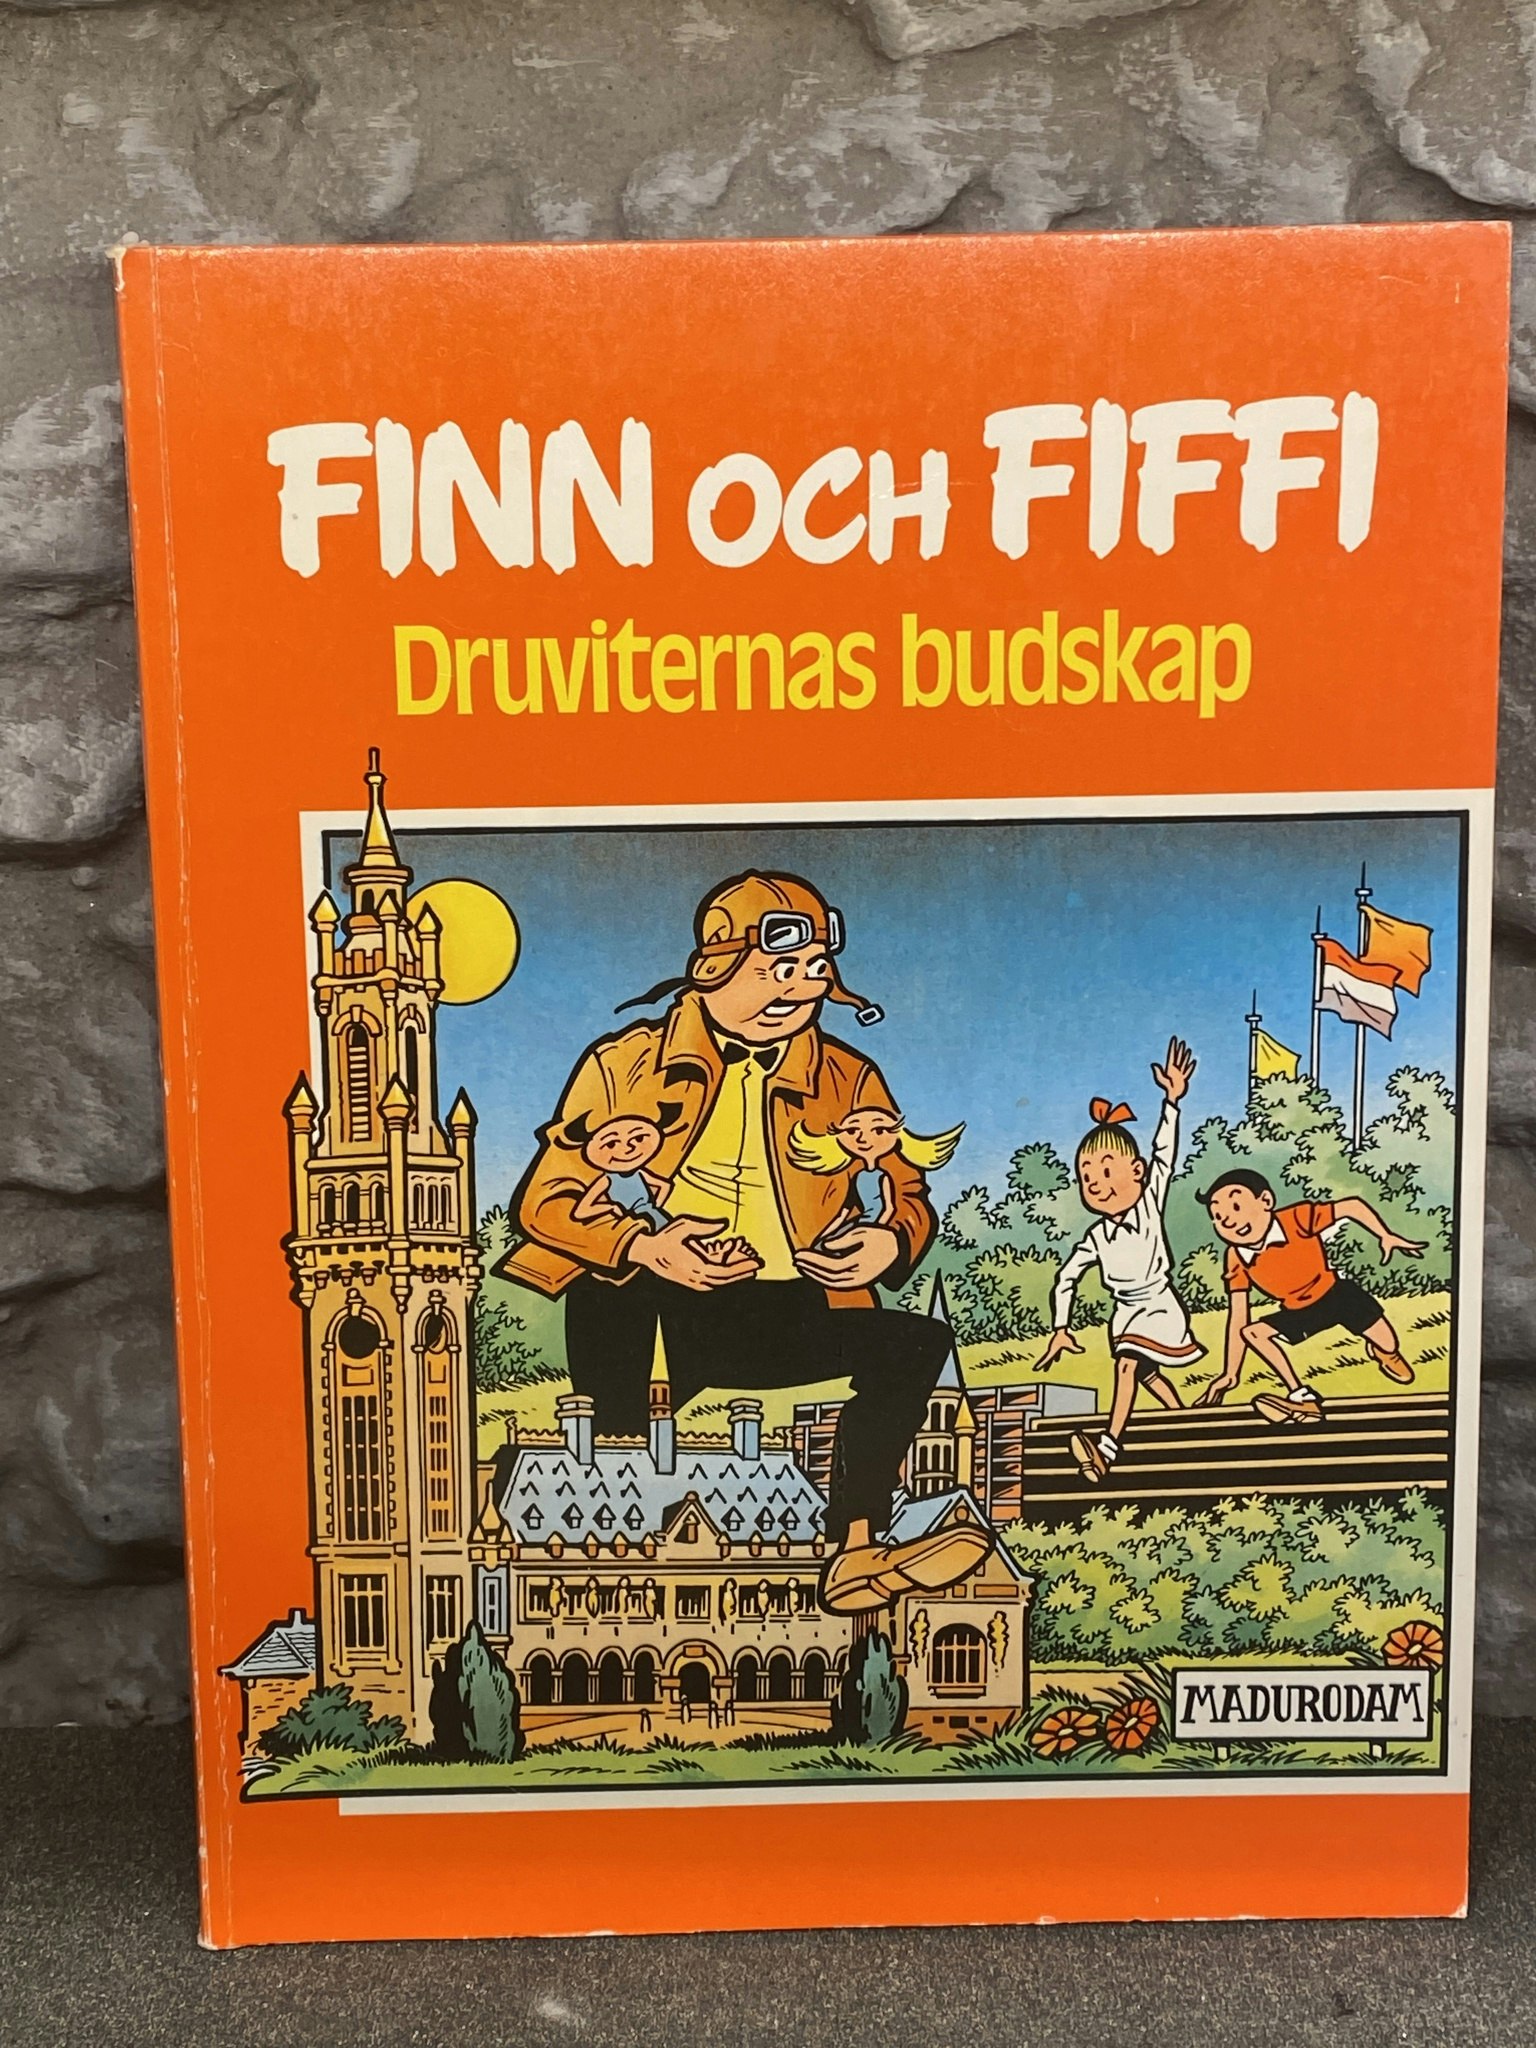 Seriealbum Finn och Fiffi: Druviternas budskap av Willy Wandersteen